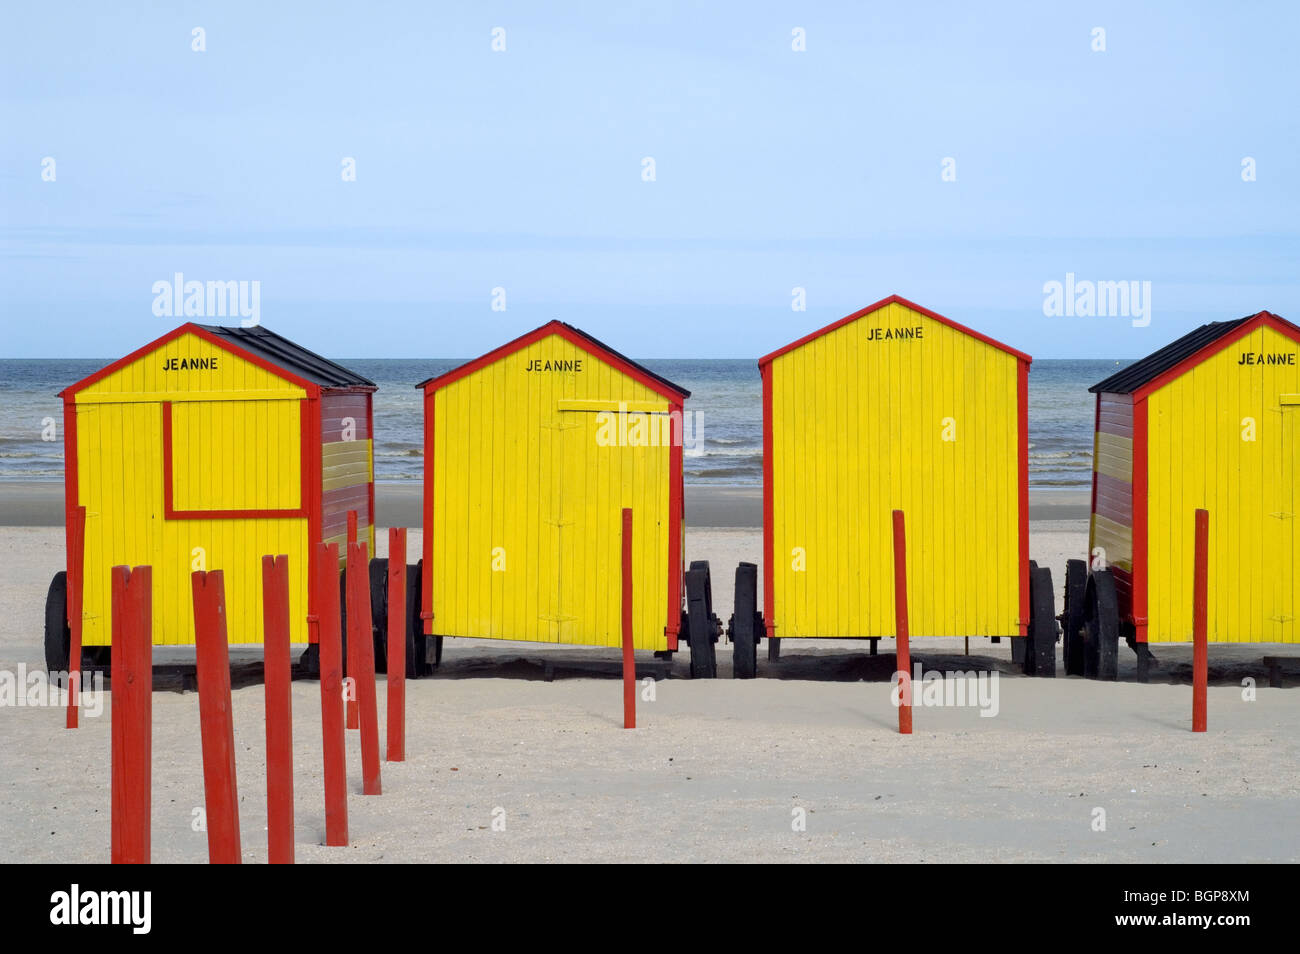 Rangée de cabines de plage à rayures colorées sur roues le long de la côte de la mer du Nord de De Panne, Belgique Banque D'Images